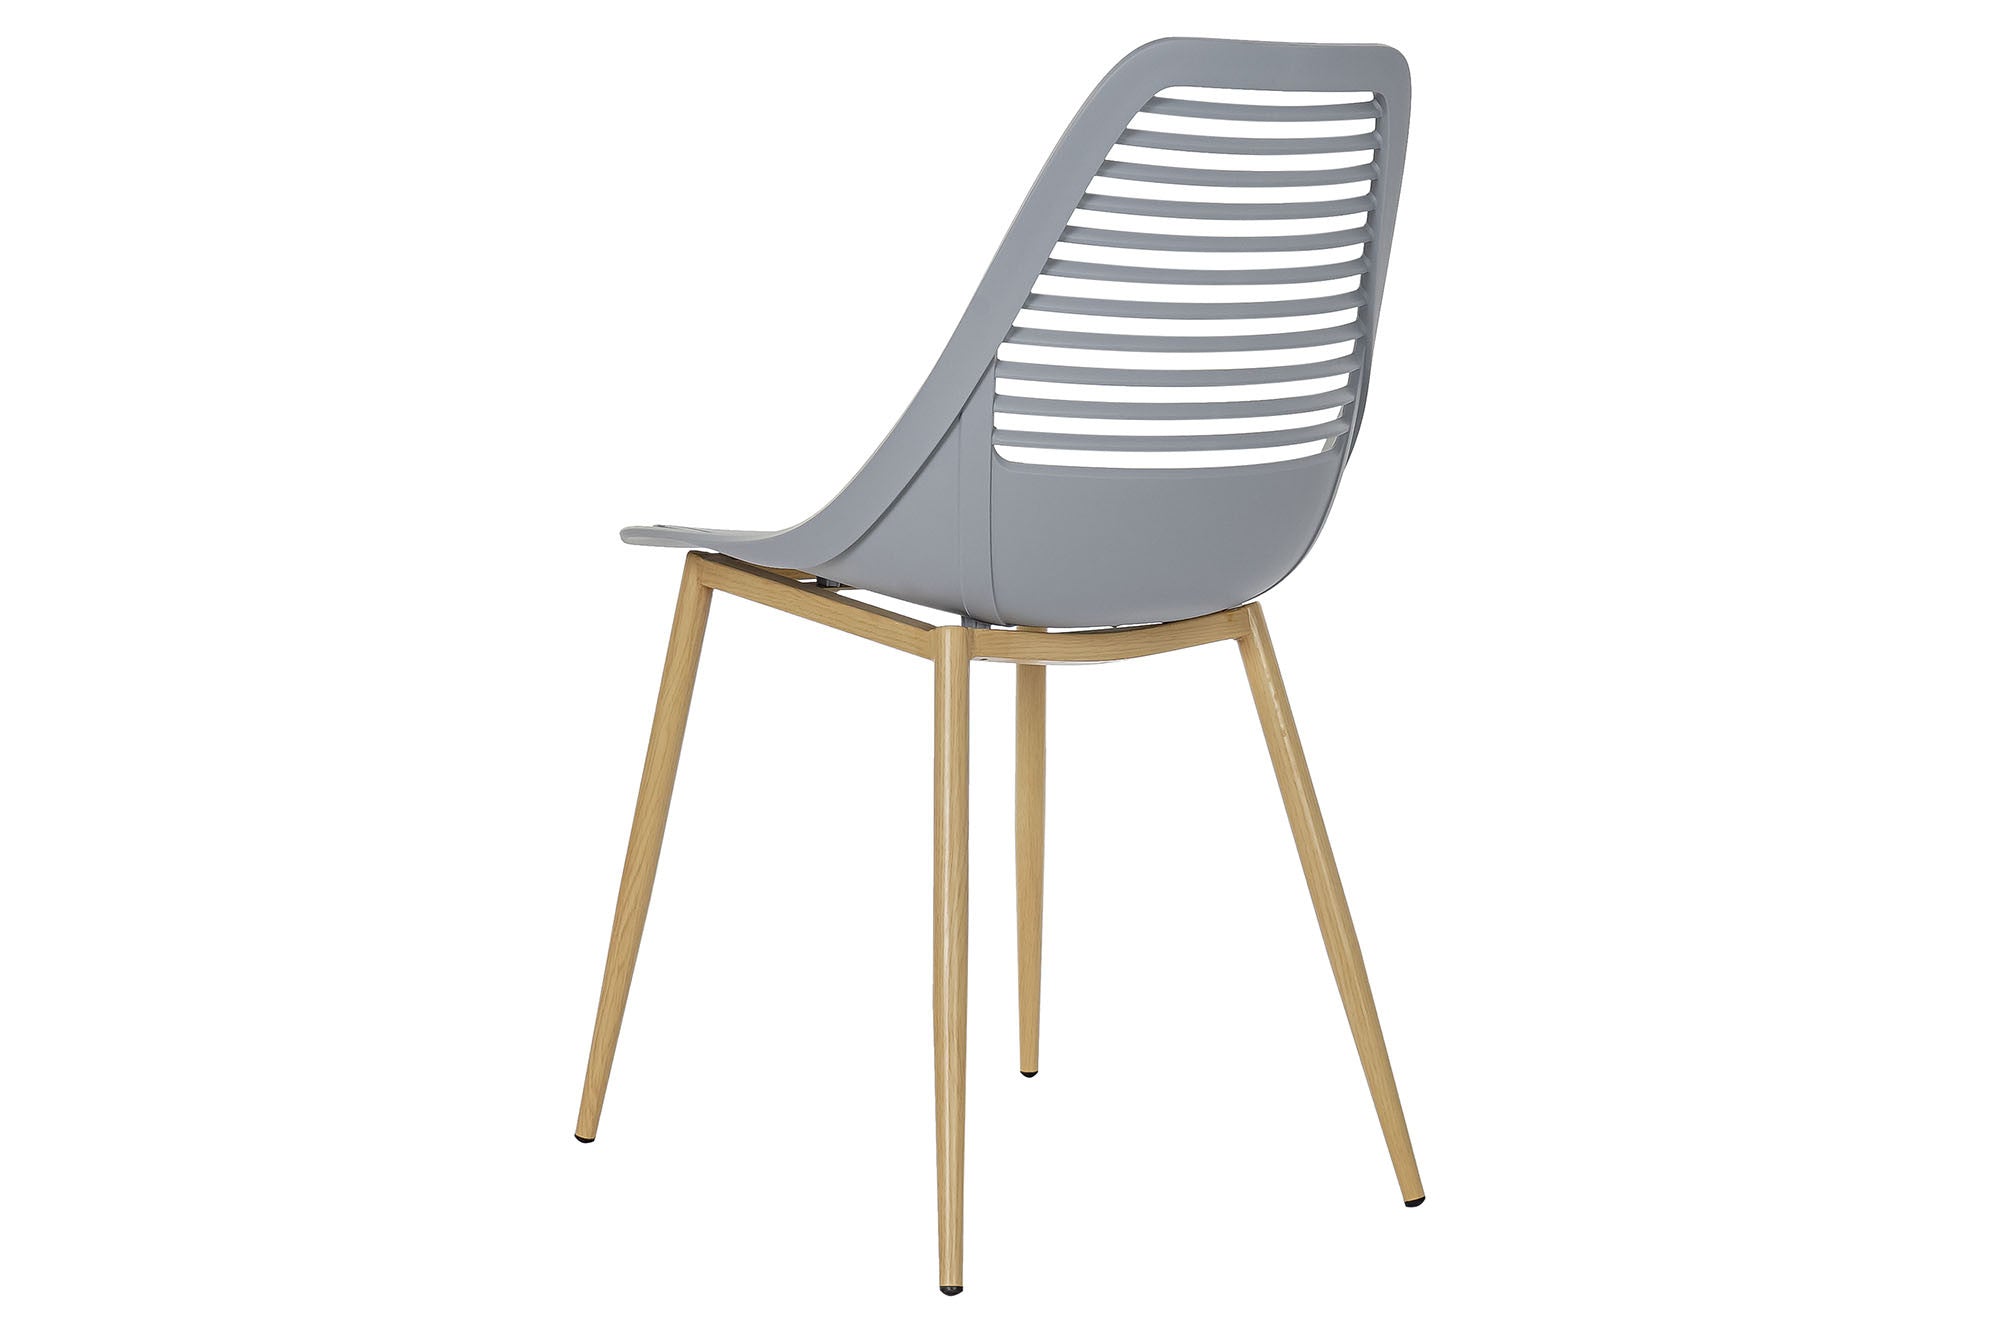 Scandinavian Design Chair Matte Light Gray and Light Brown - An Elegant Blend of Modernity and Comfort 